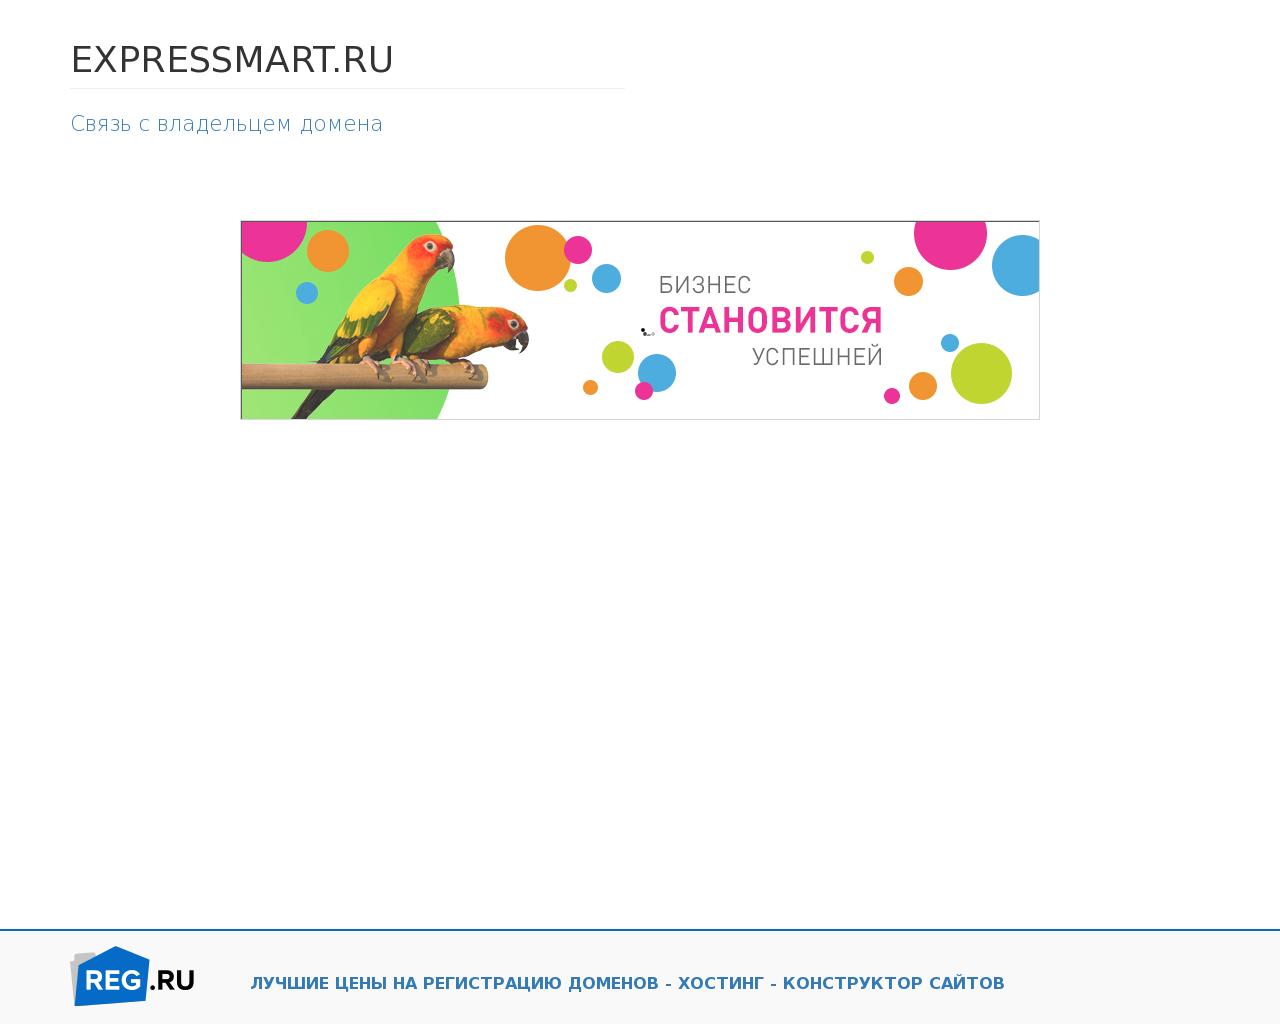 Изображение сайта expressmart.ru в разрешении 1280x1024